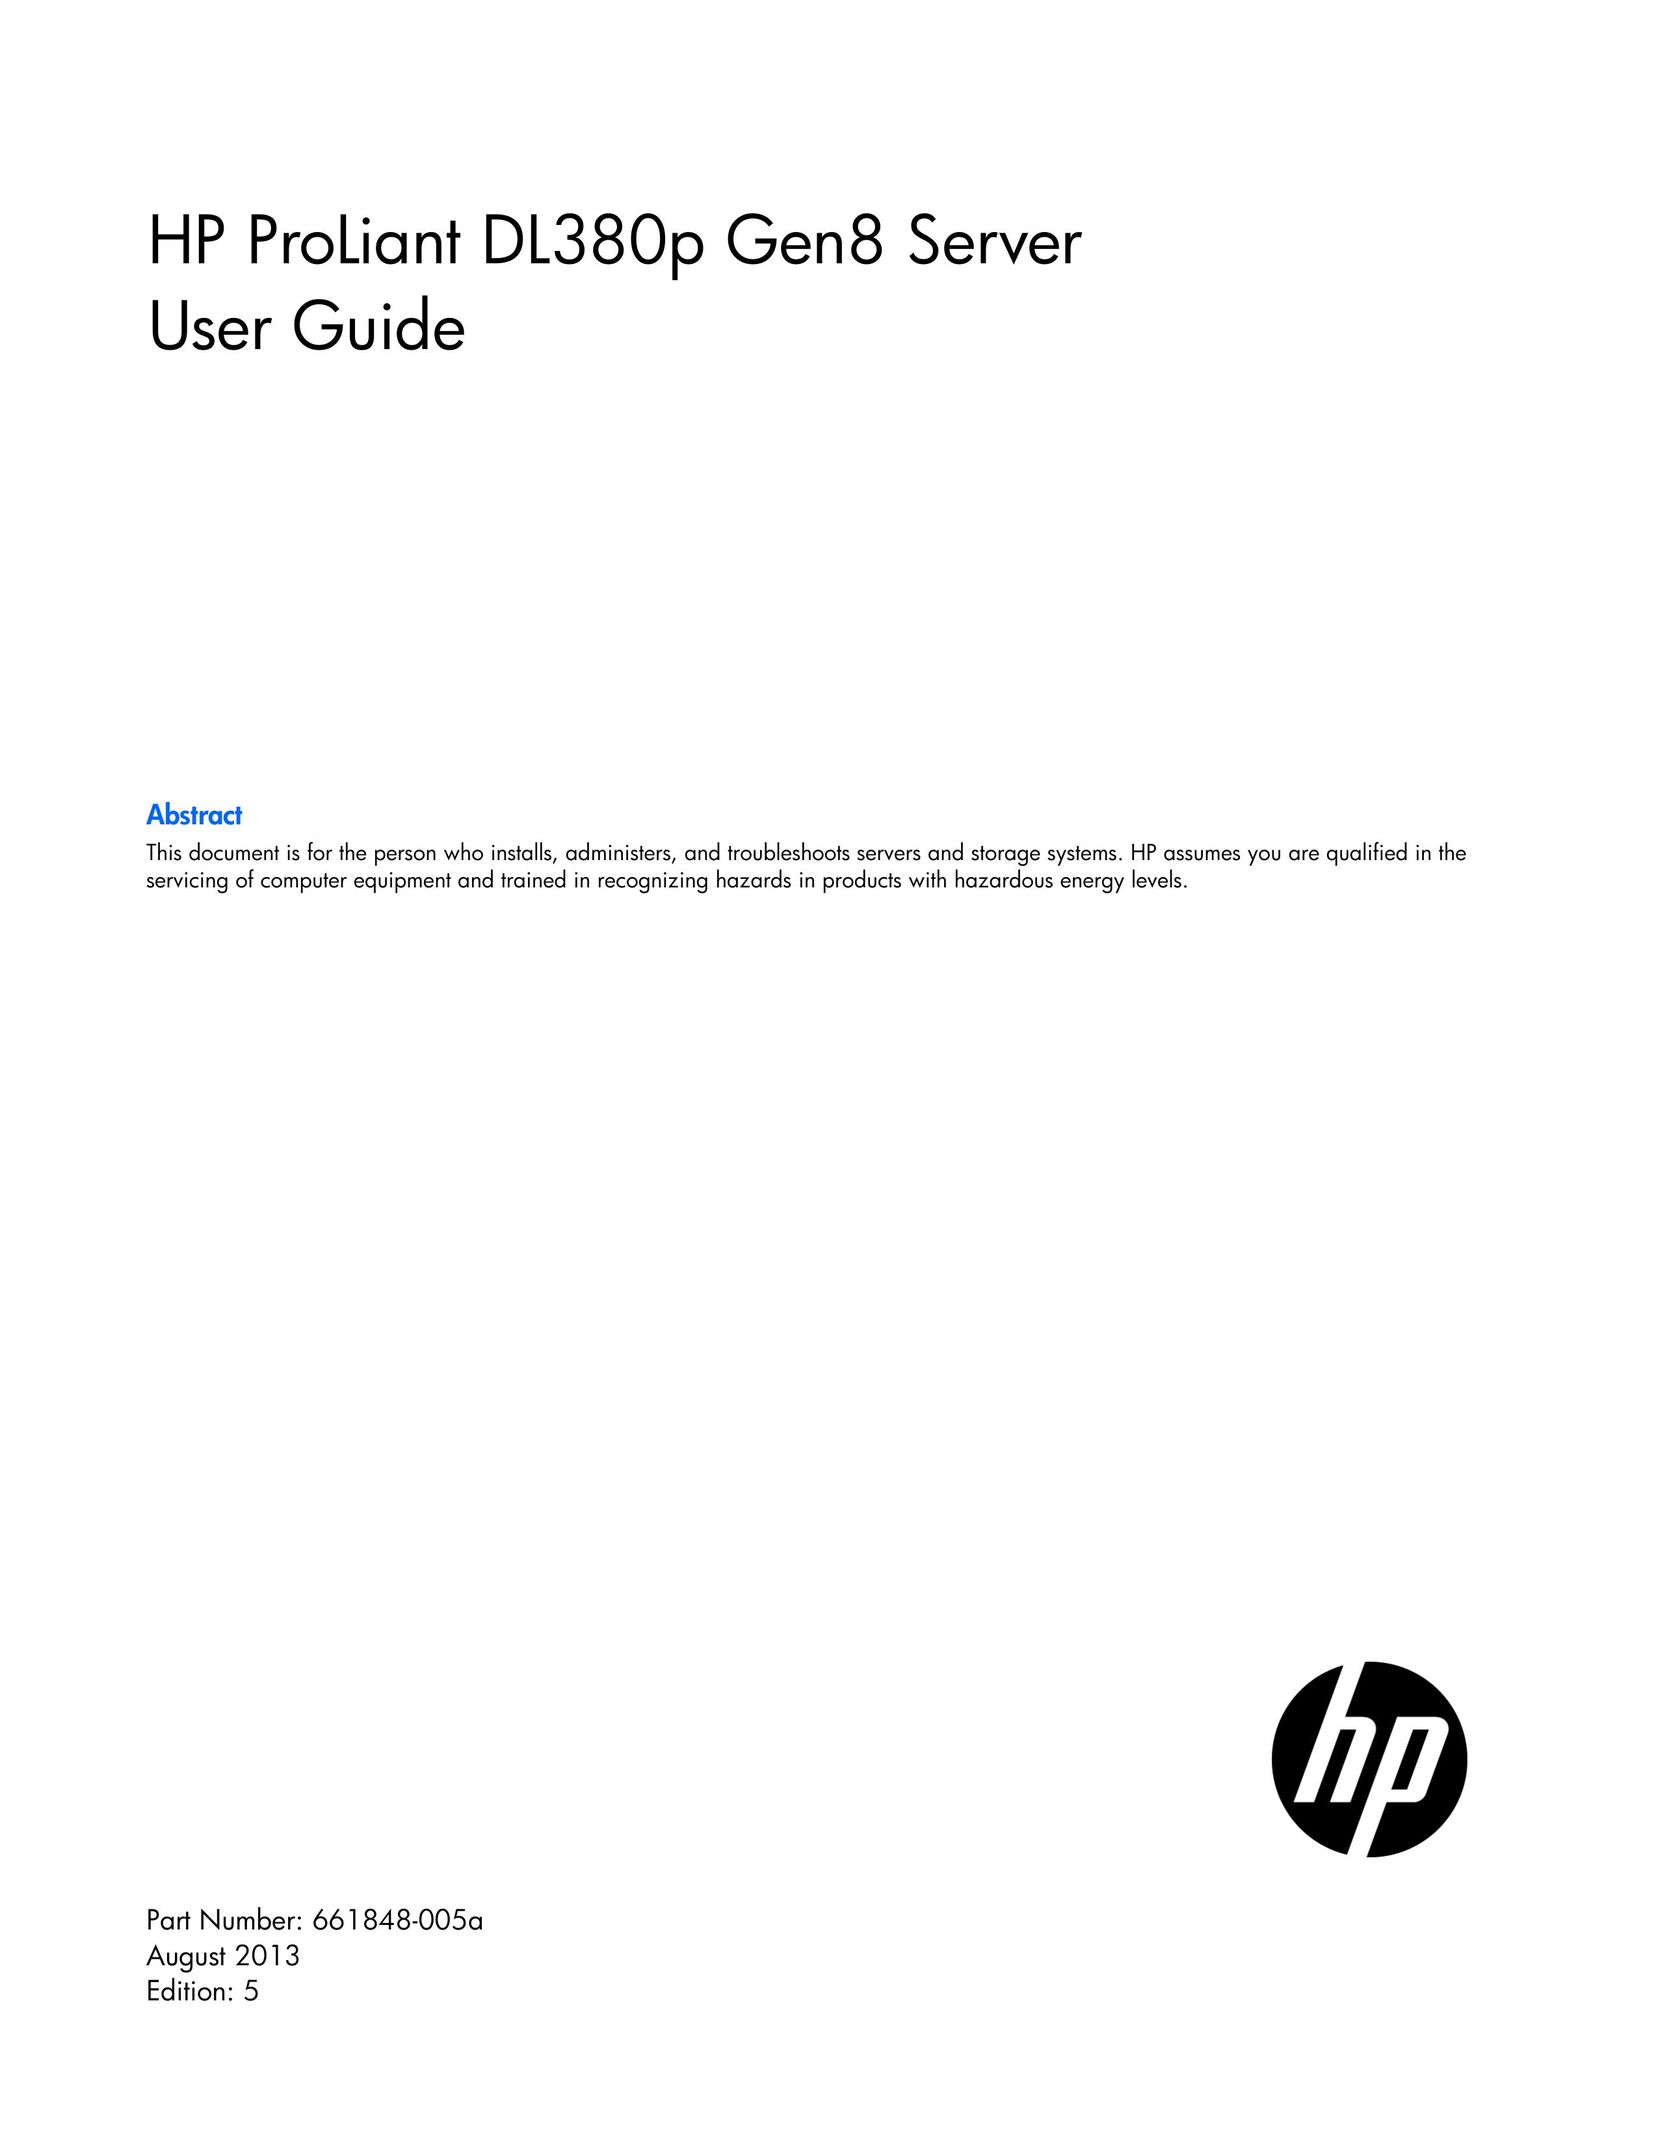 HP (Hewlett-Packard) 662257-001 Server User Manual